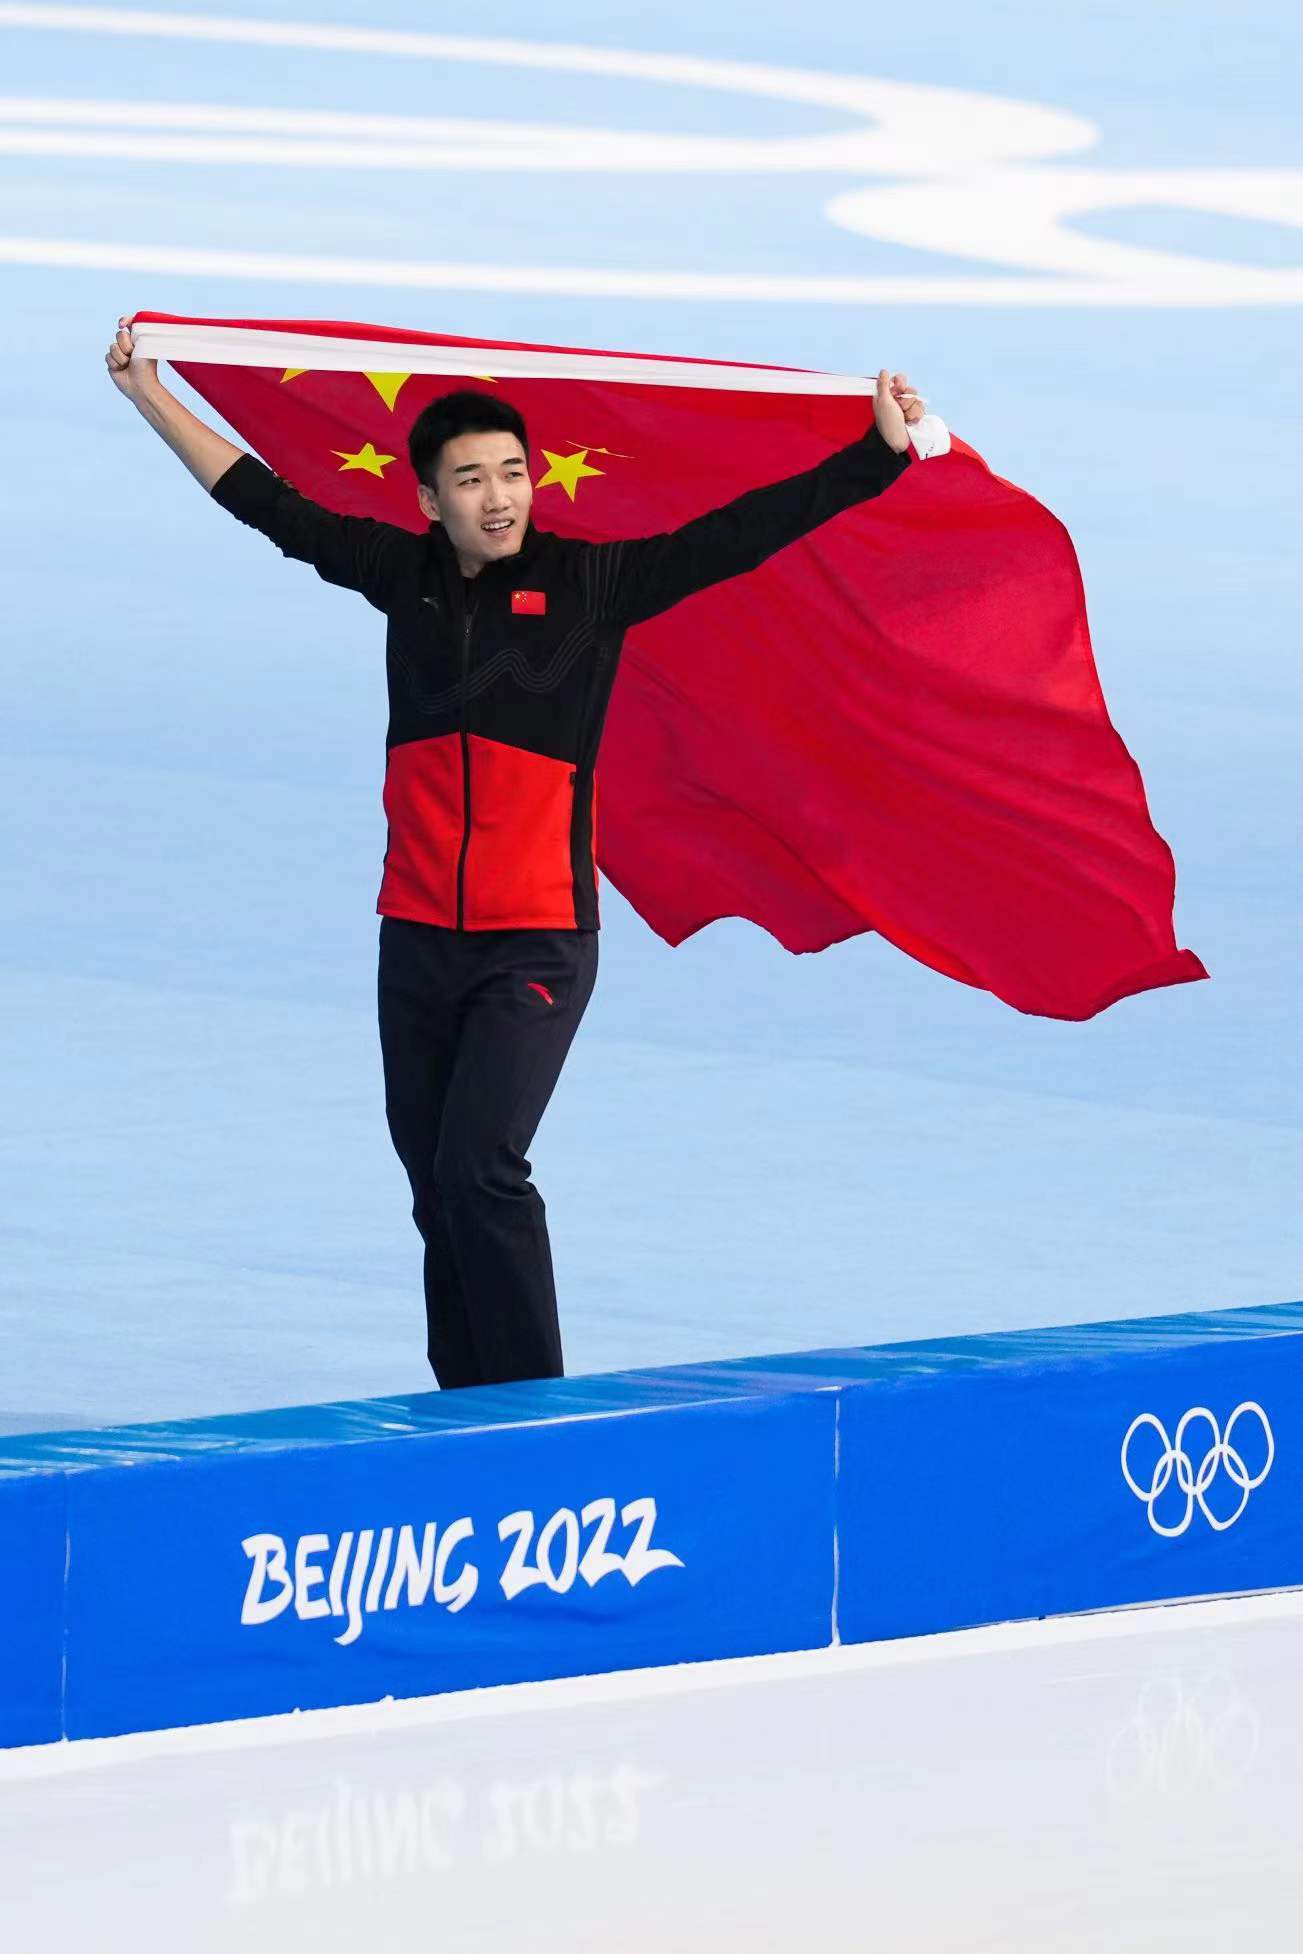 高亭|一枚金牌创历史 整体仍有进步空间——中国速滑队未来仍需努力